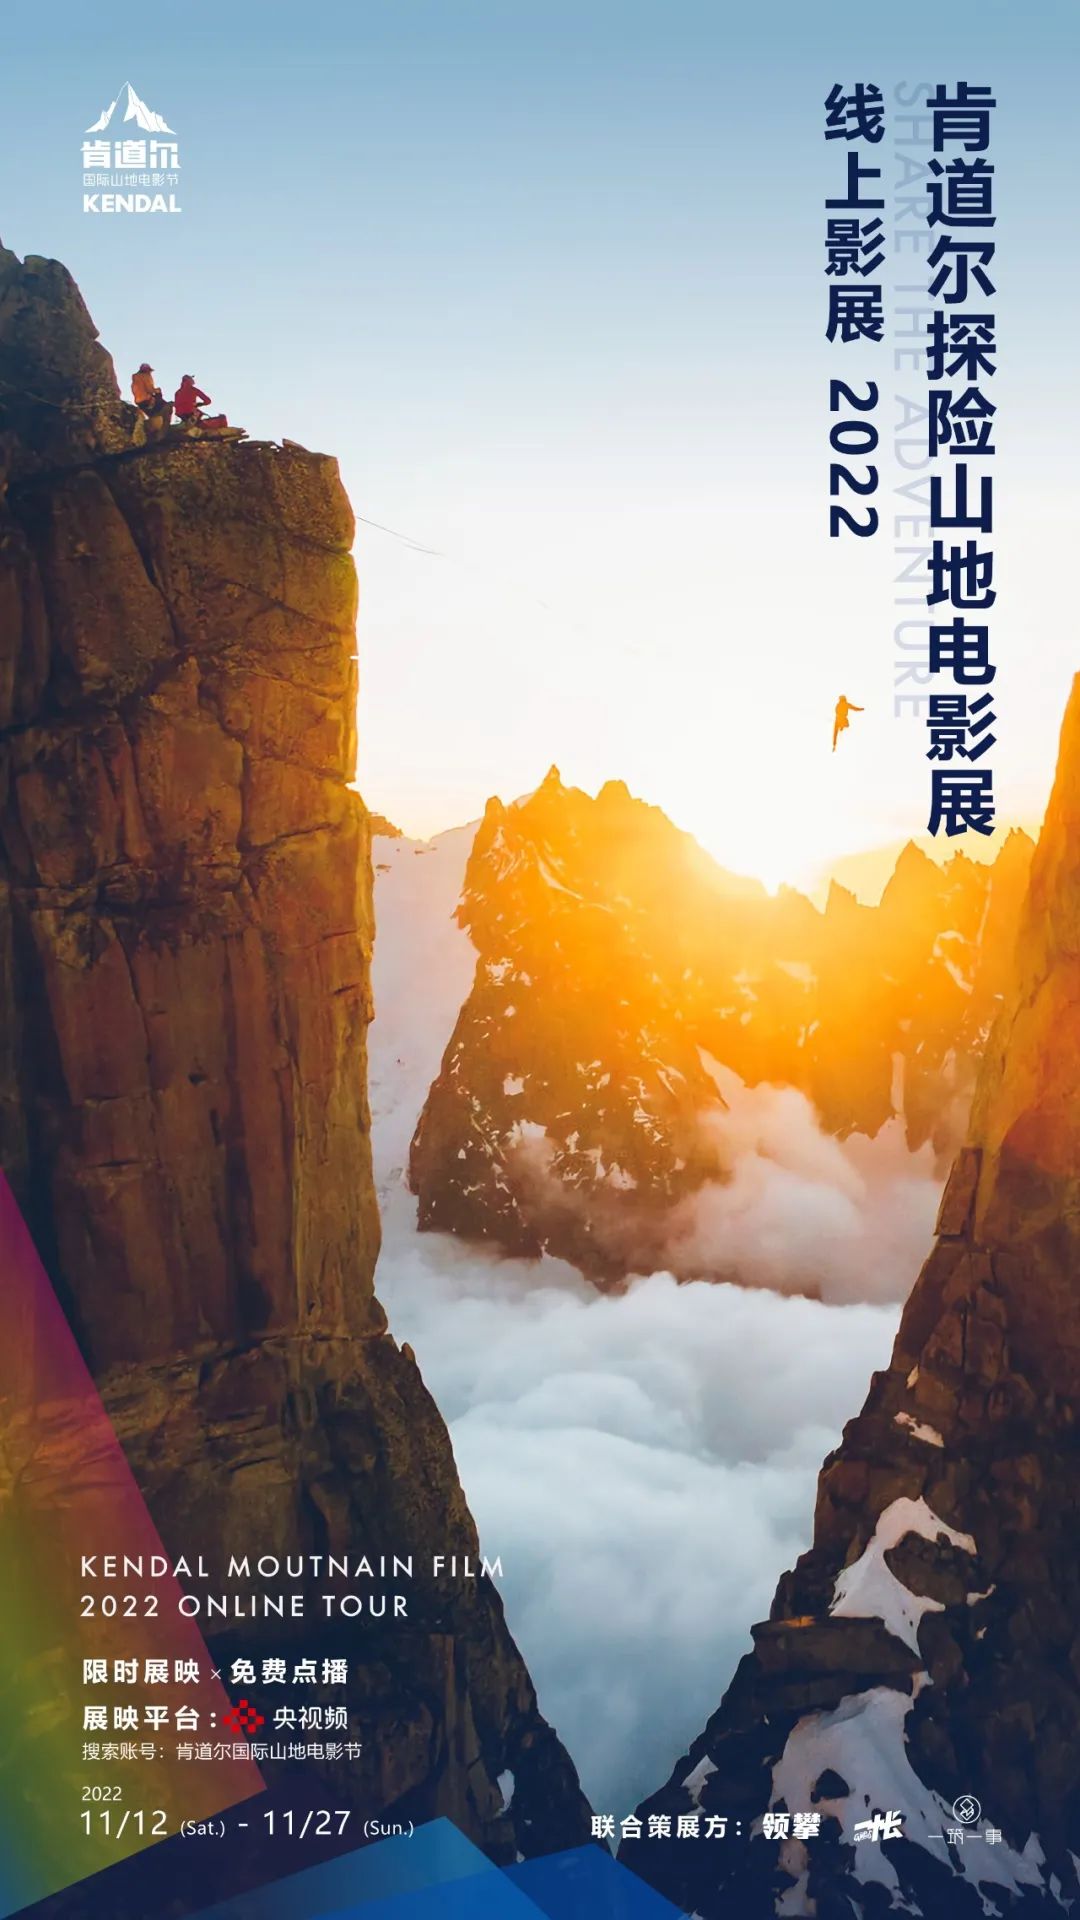 2022年肯道尔探险山地影展中国巡展11月12日开幕